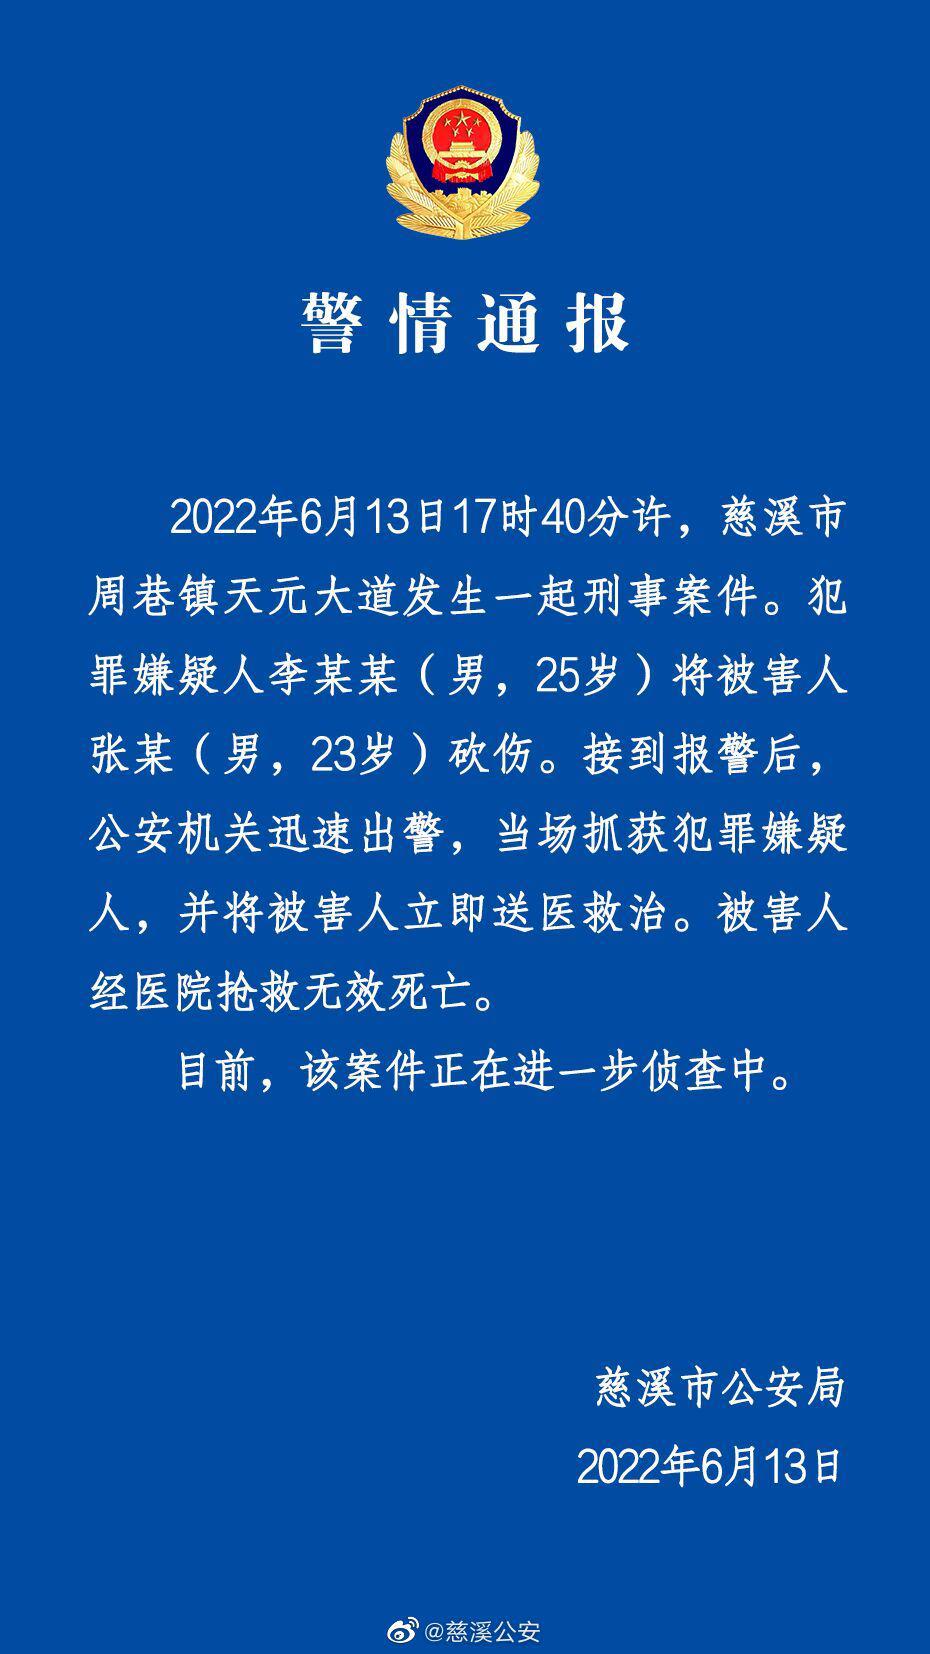 警方通报宁波慈溪砍人事件详情最新消息 被害人已死亡